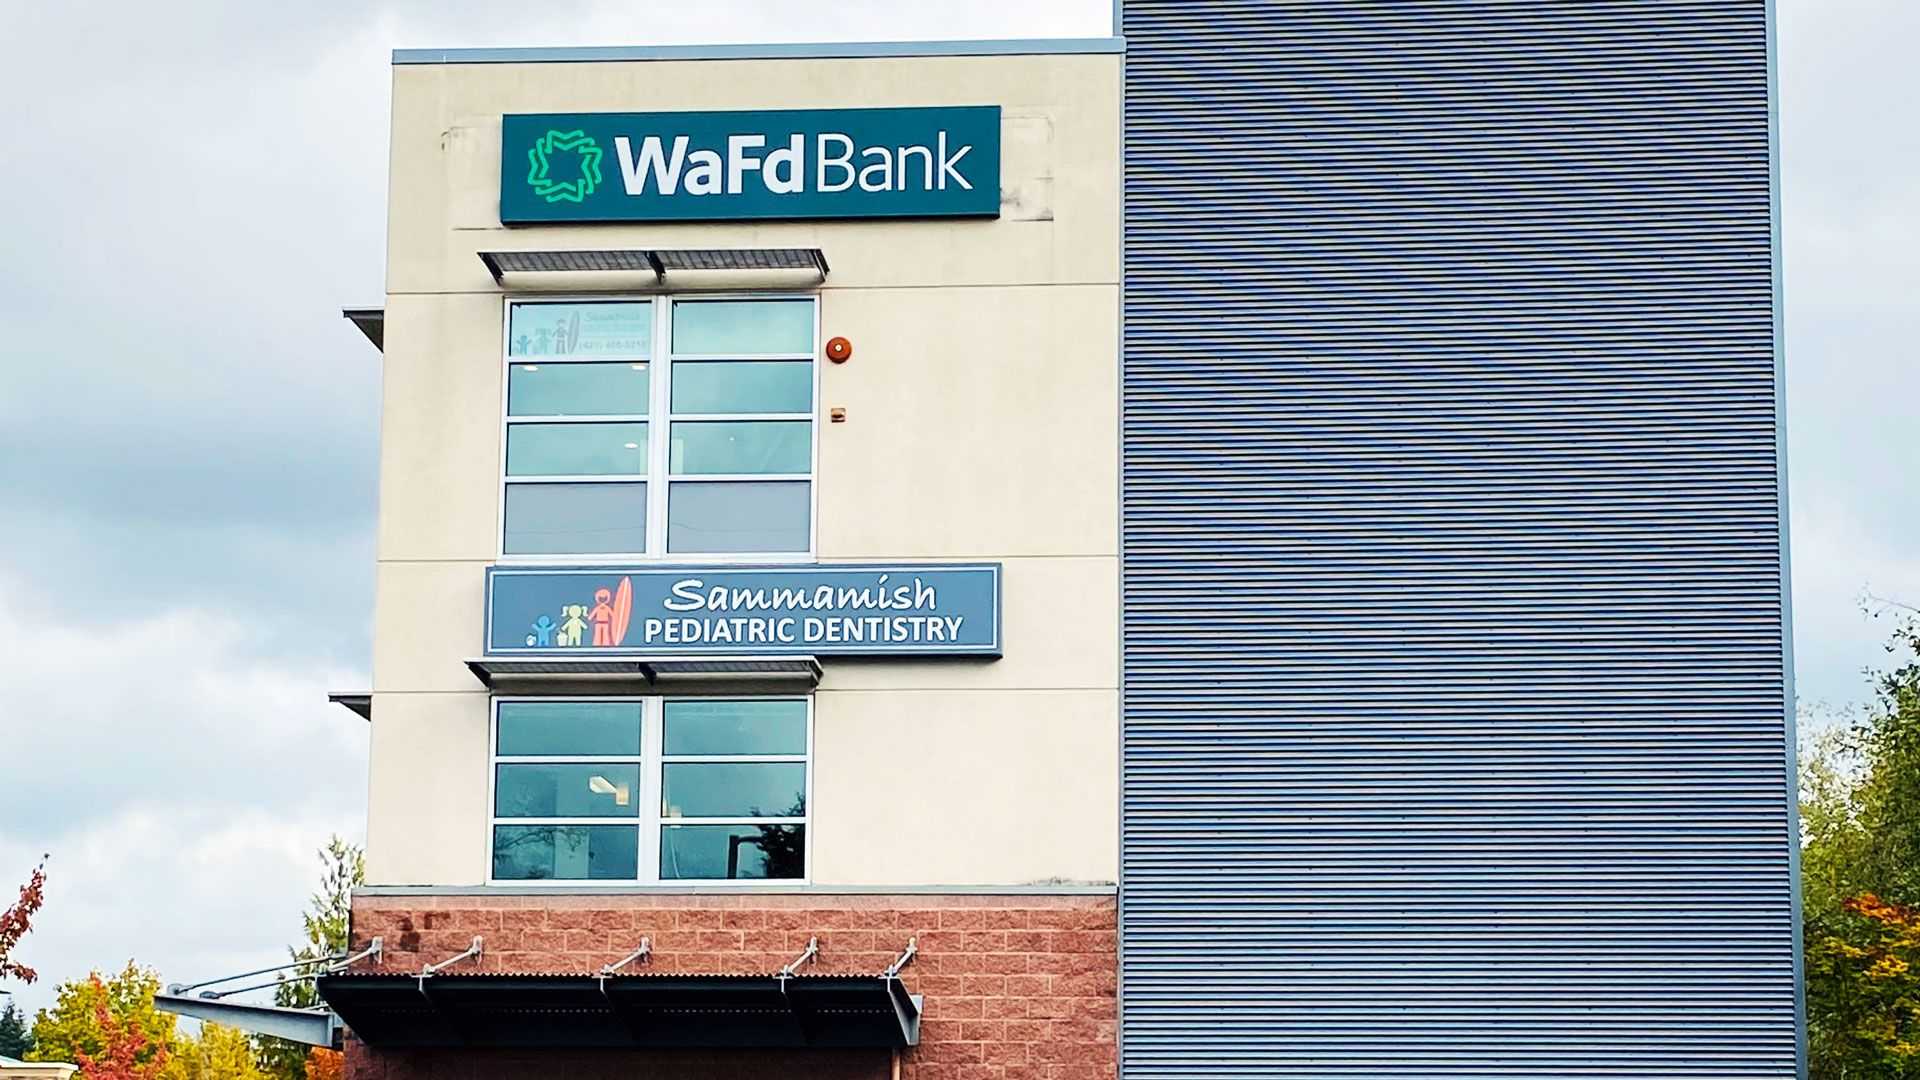 WaFd Bank in Sammamish, Washington #1224 - Washington Federal.